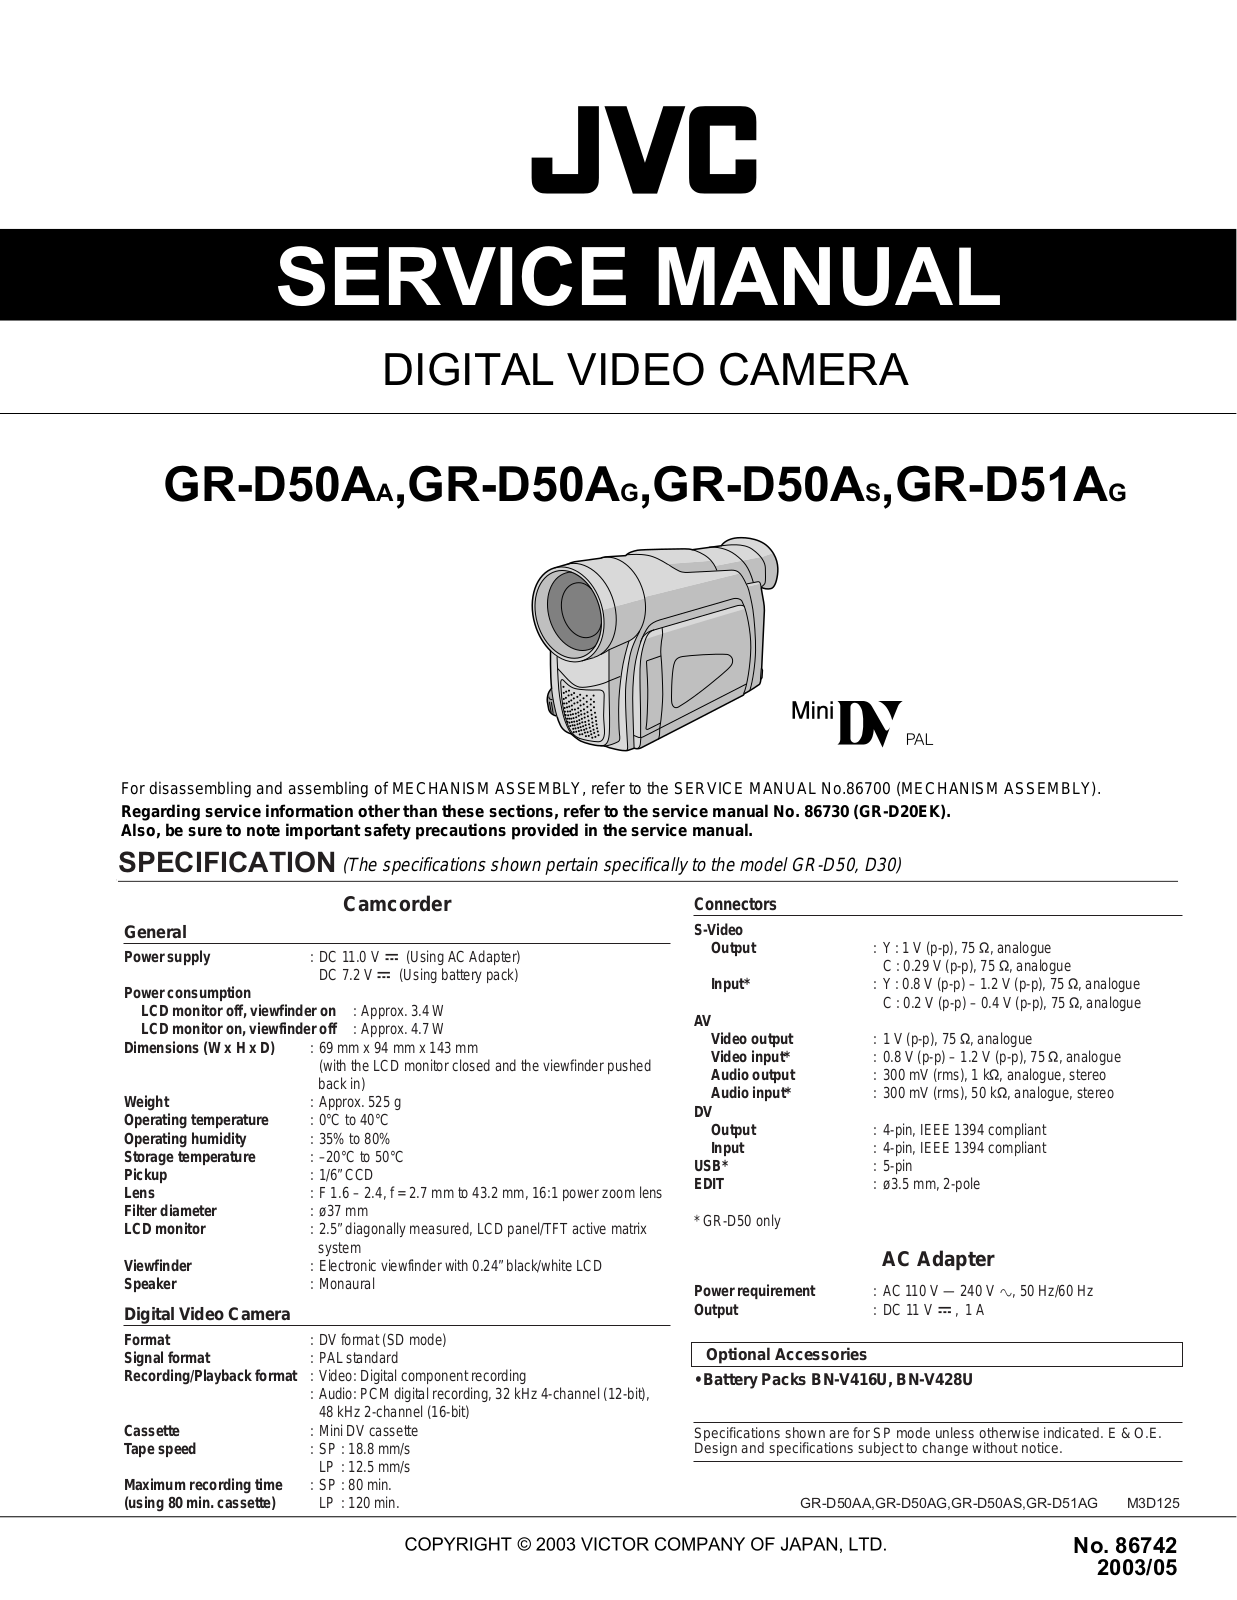 JVC GR-D50AA, GR-D50AG, GR-D50AS, GR-D51AG Service Manual